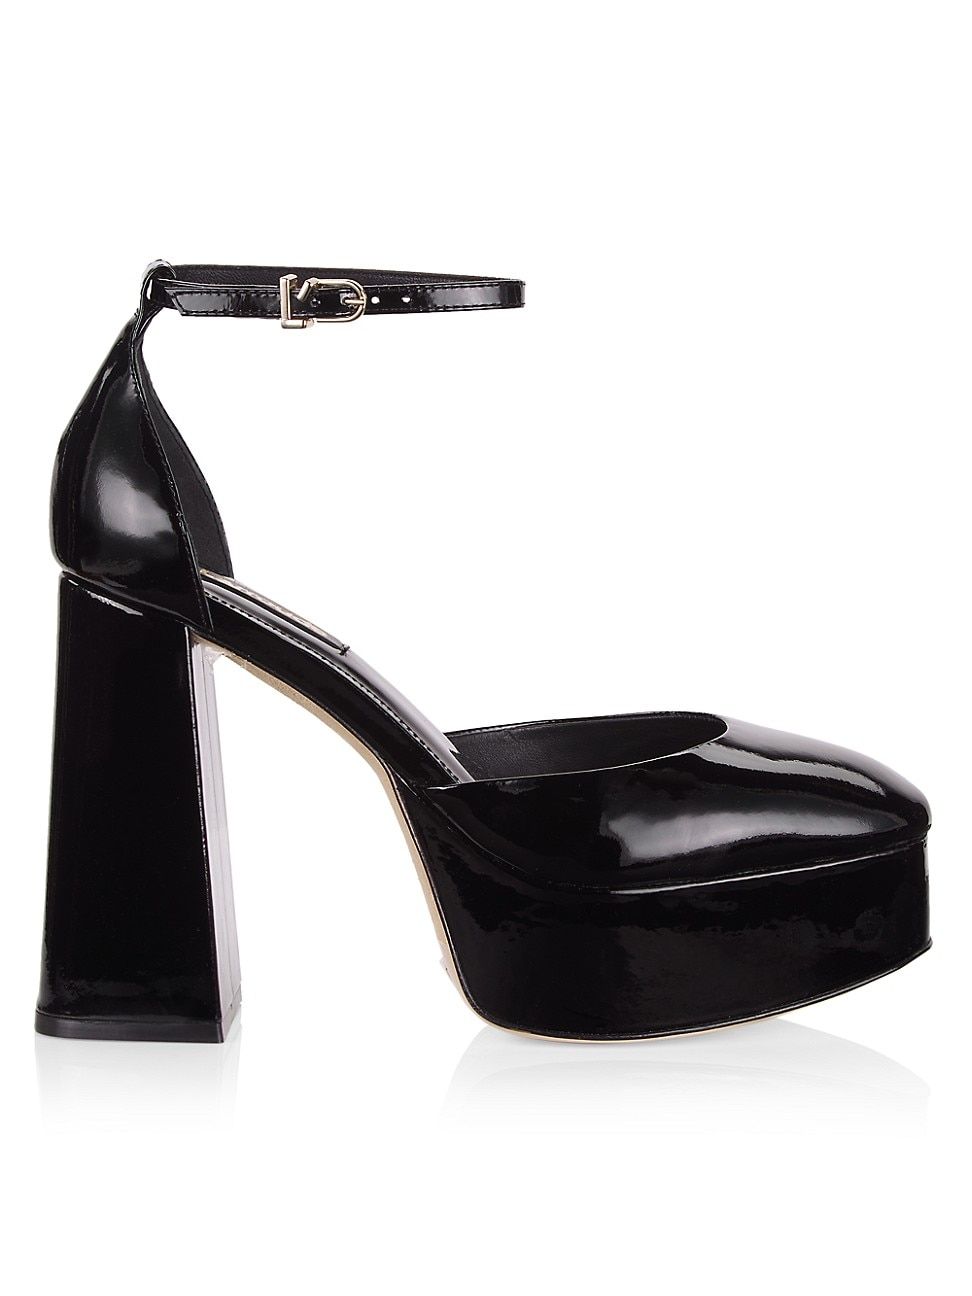 Women's Ari Patent Leather Ankle-Strap Platform Pumps - Black - Size 8.5 | Saks Fifth Avenue